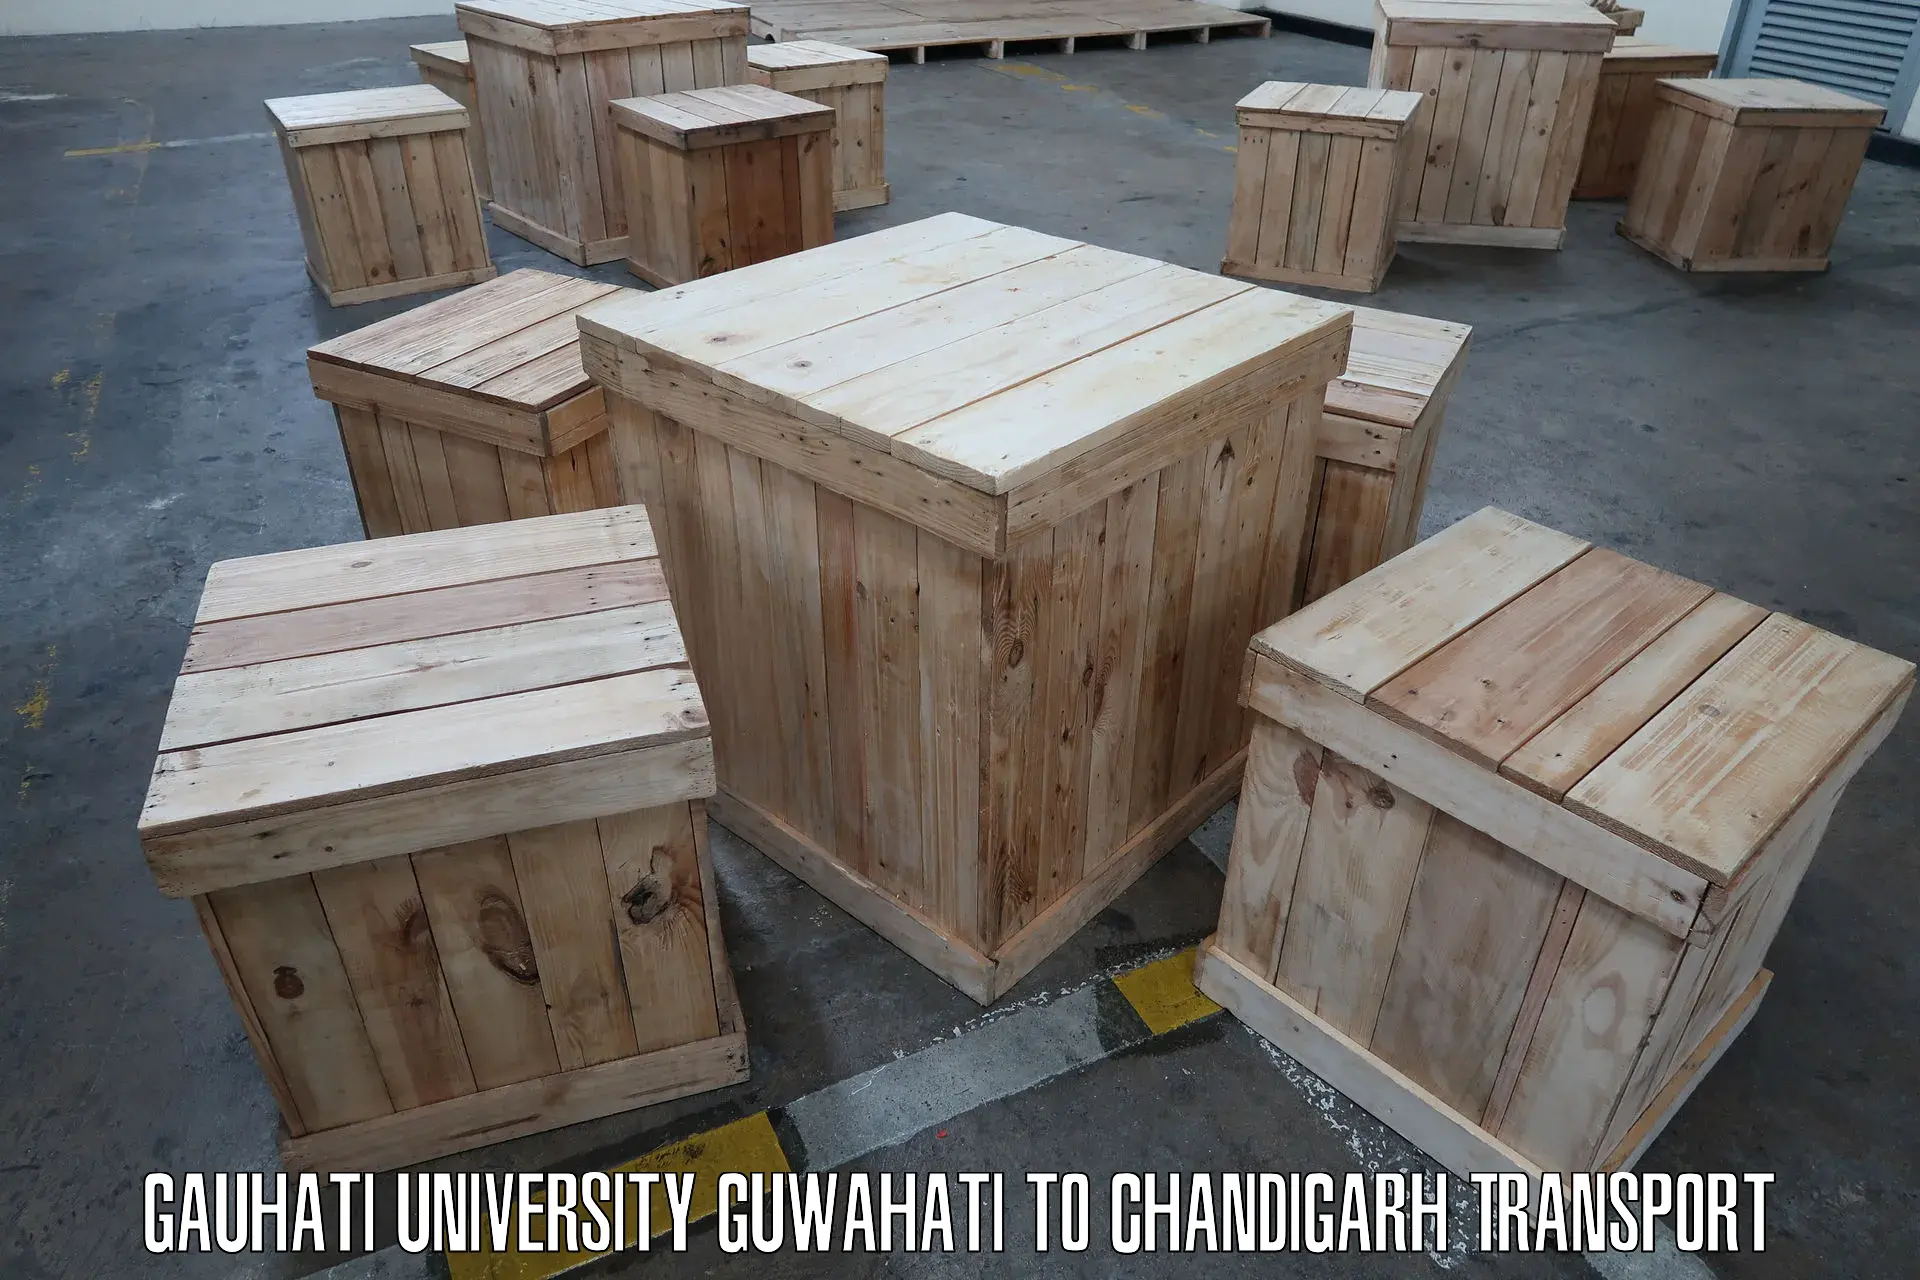 Pick up transport service Gauhati University Guwahati to Chandigarh